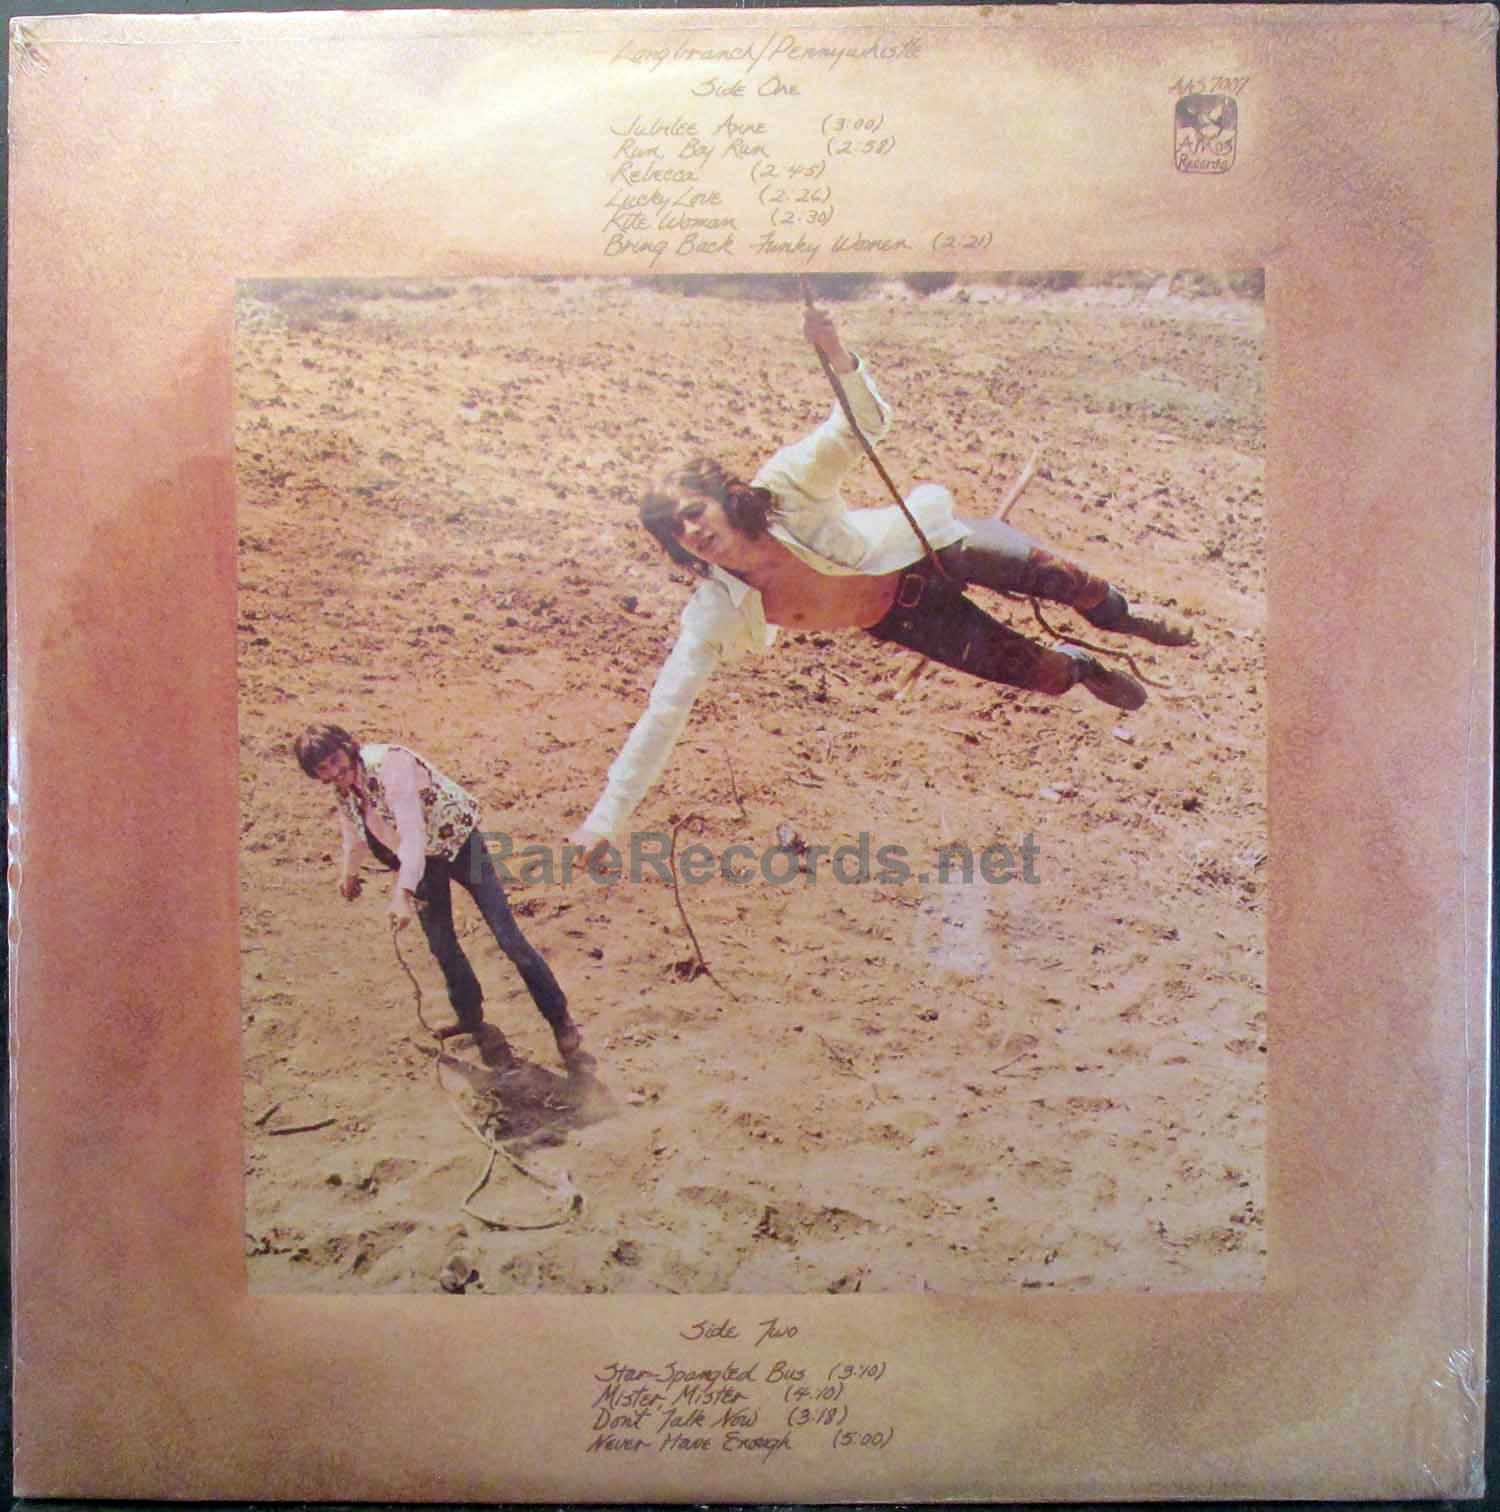 Longbranch Pennywhistle - Longbranch Pennywhistle sealed 1970 U.S. LP with  Glenn Frey